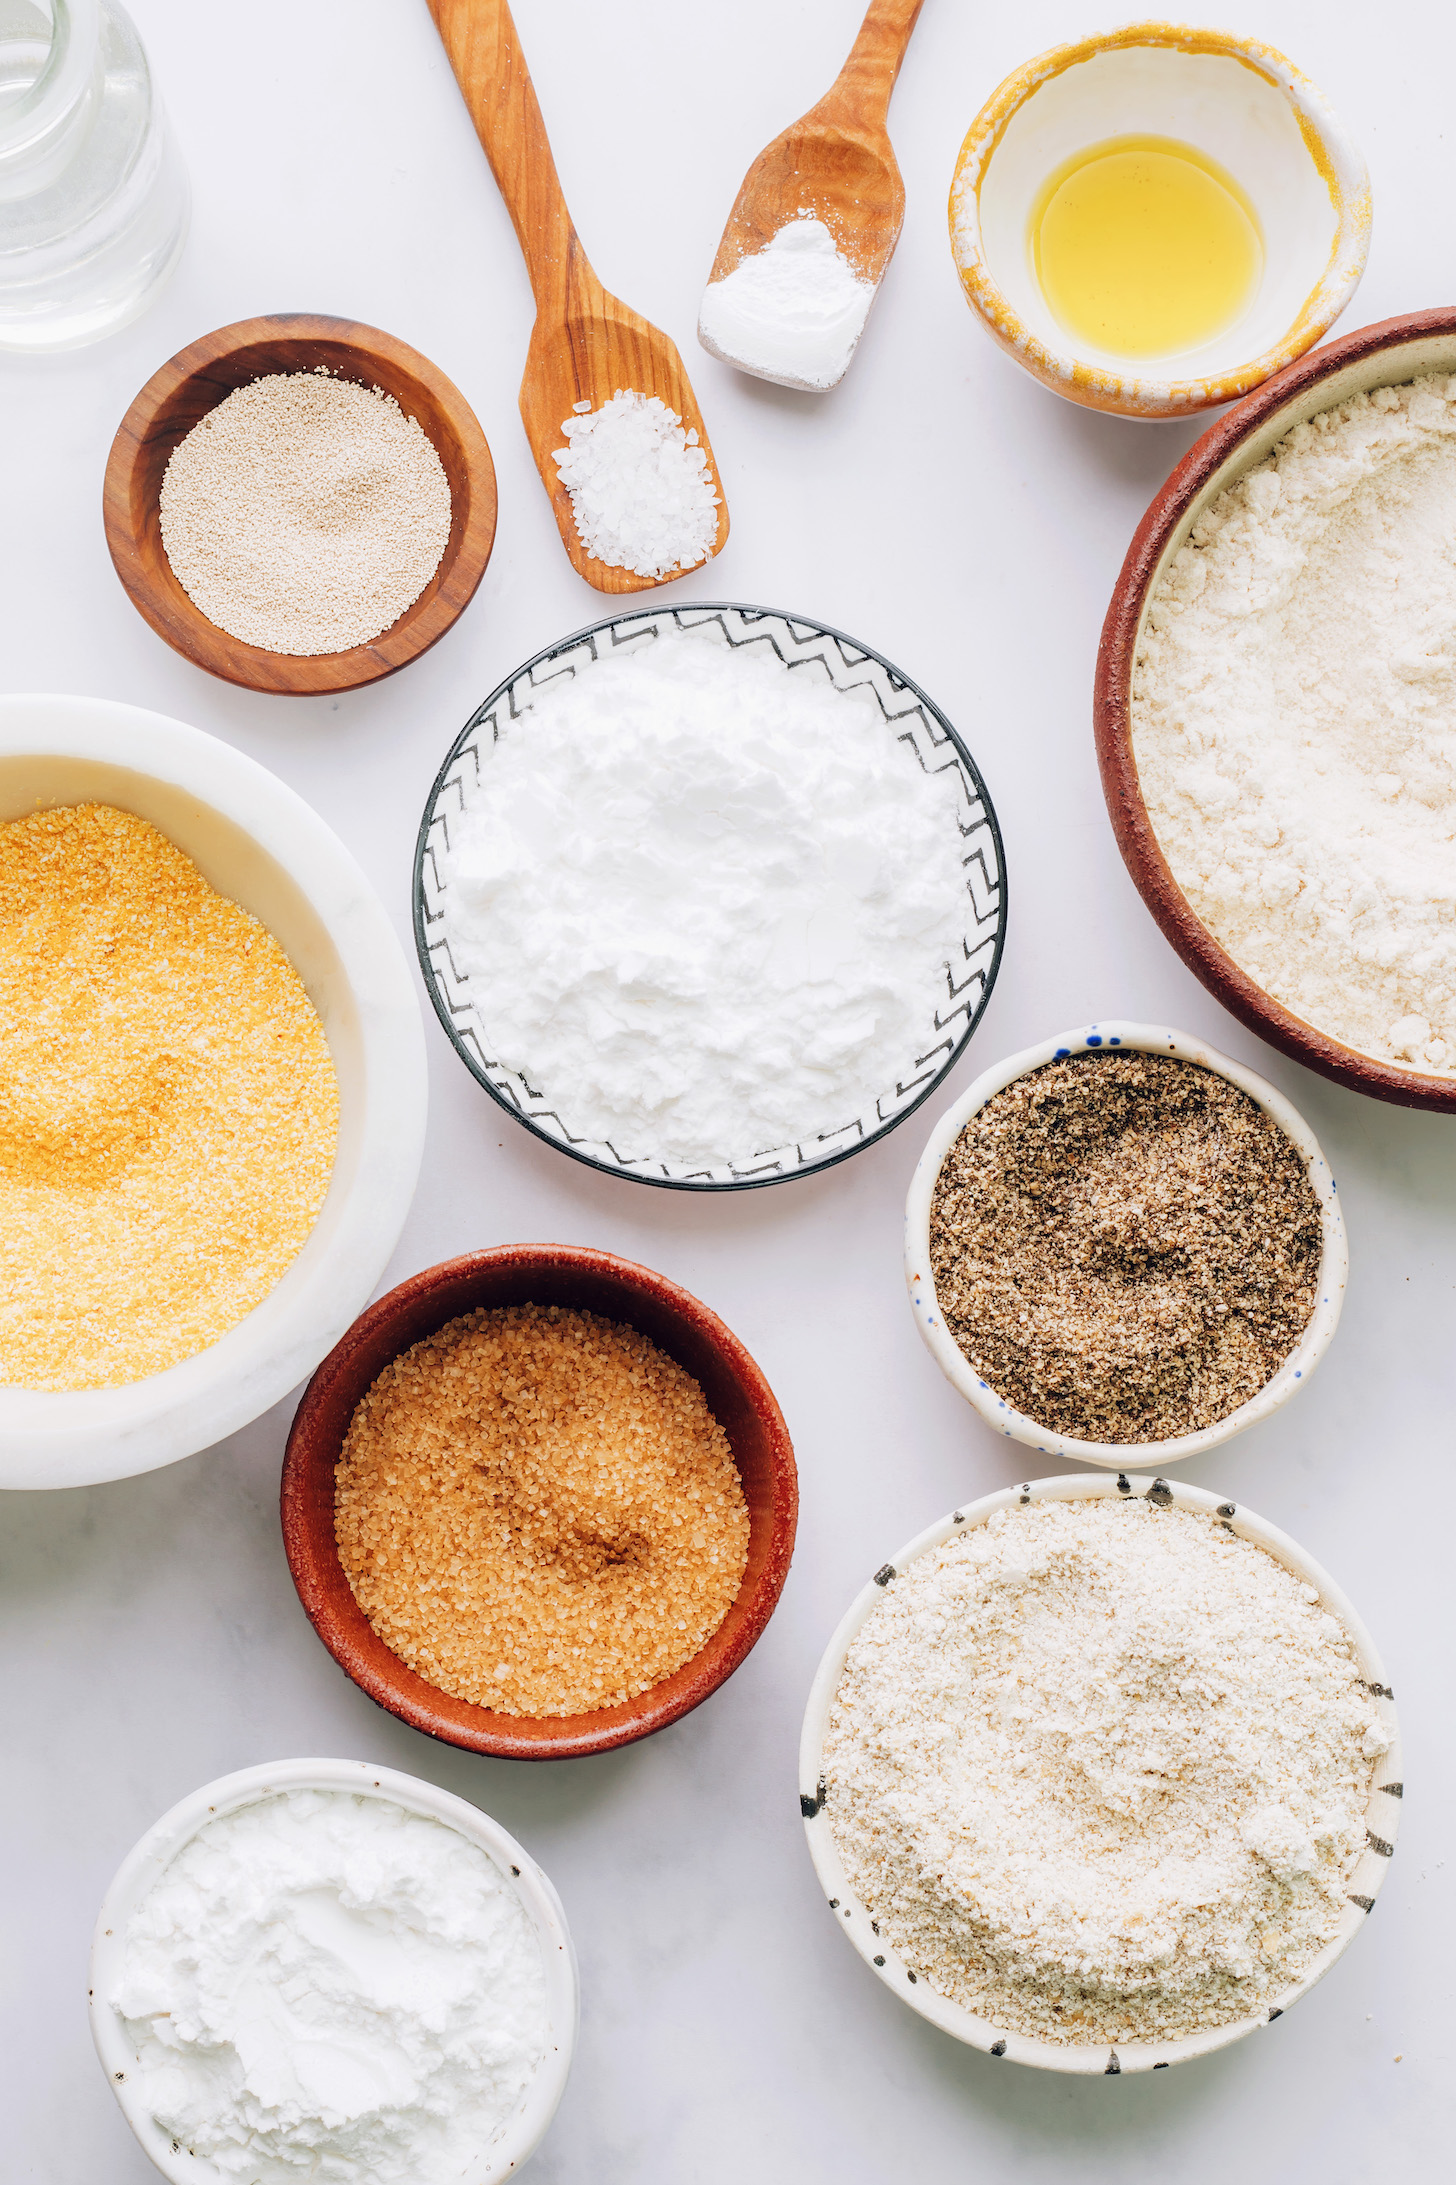 Yeast salt baking powder, avocado oil, brown rice flour, tapioca flour, potato starch, oat flour, cornmeal, ground chia seeds, and cane sugar